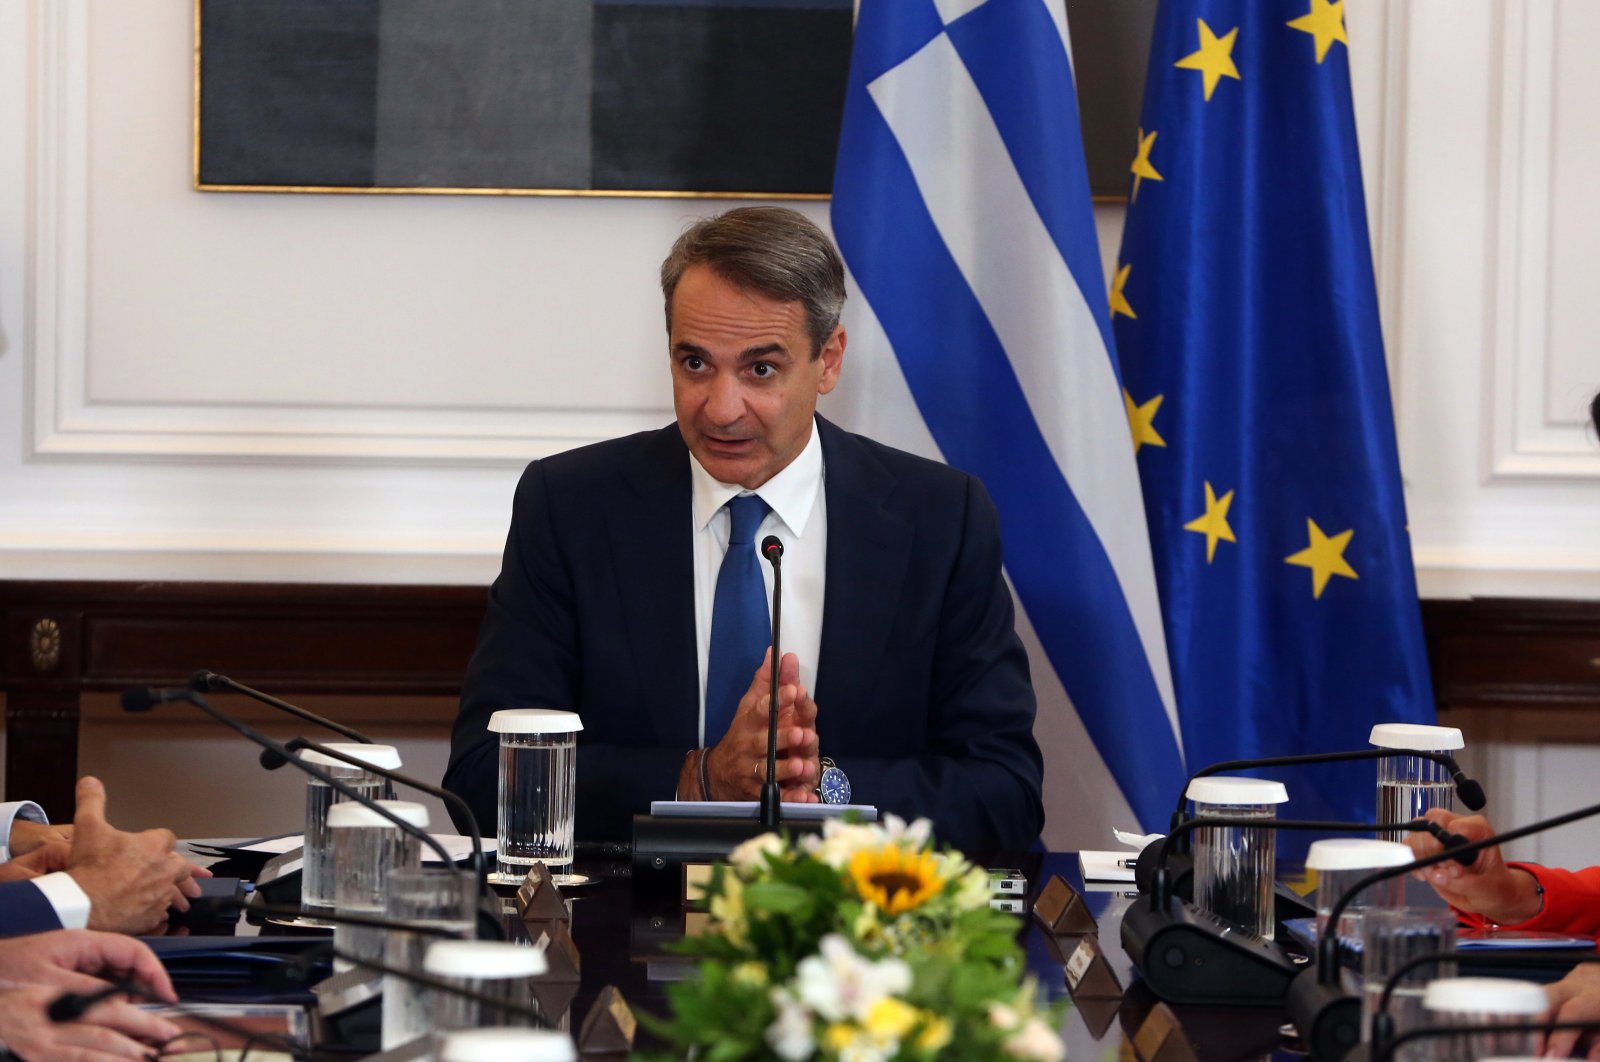 Tidak adil bagi Yunani untuk mengelola beban migrasi sendirian: Mitsotakis